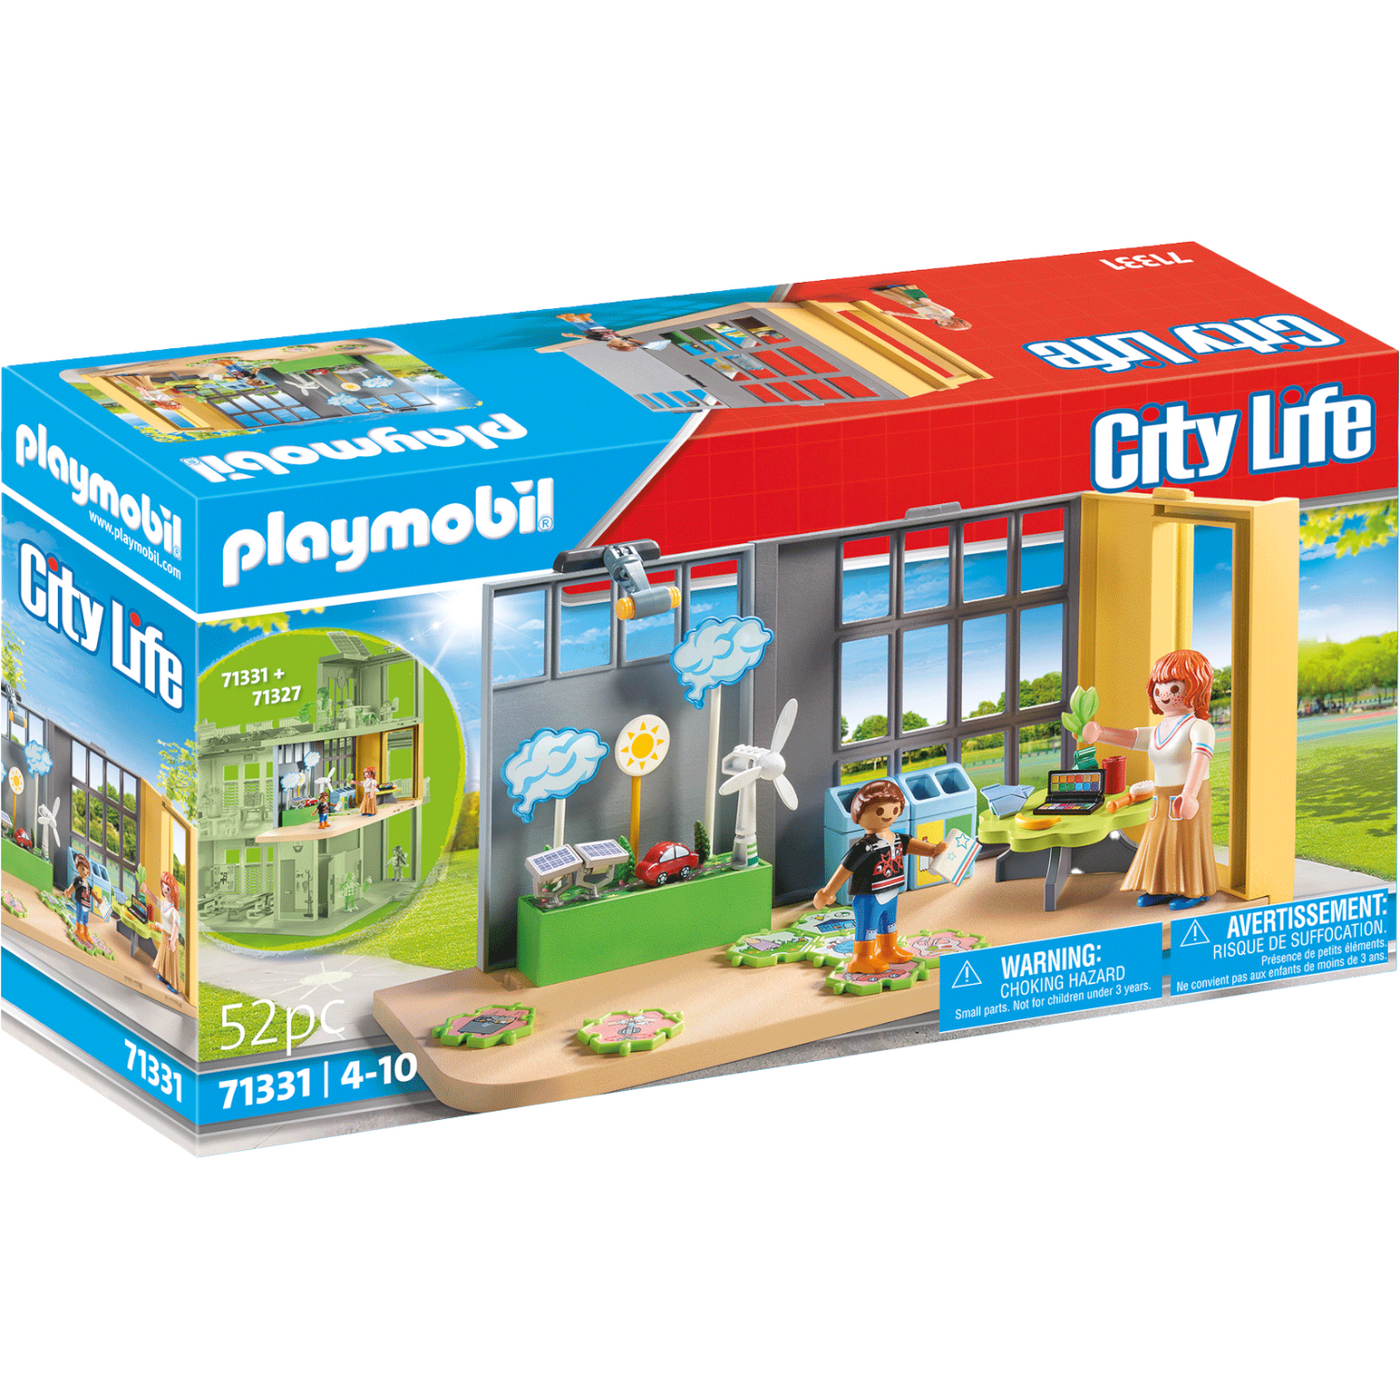 Playmobil City Life Adventure Playground 70281 • Price »